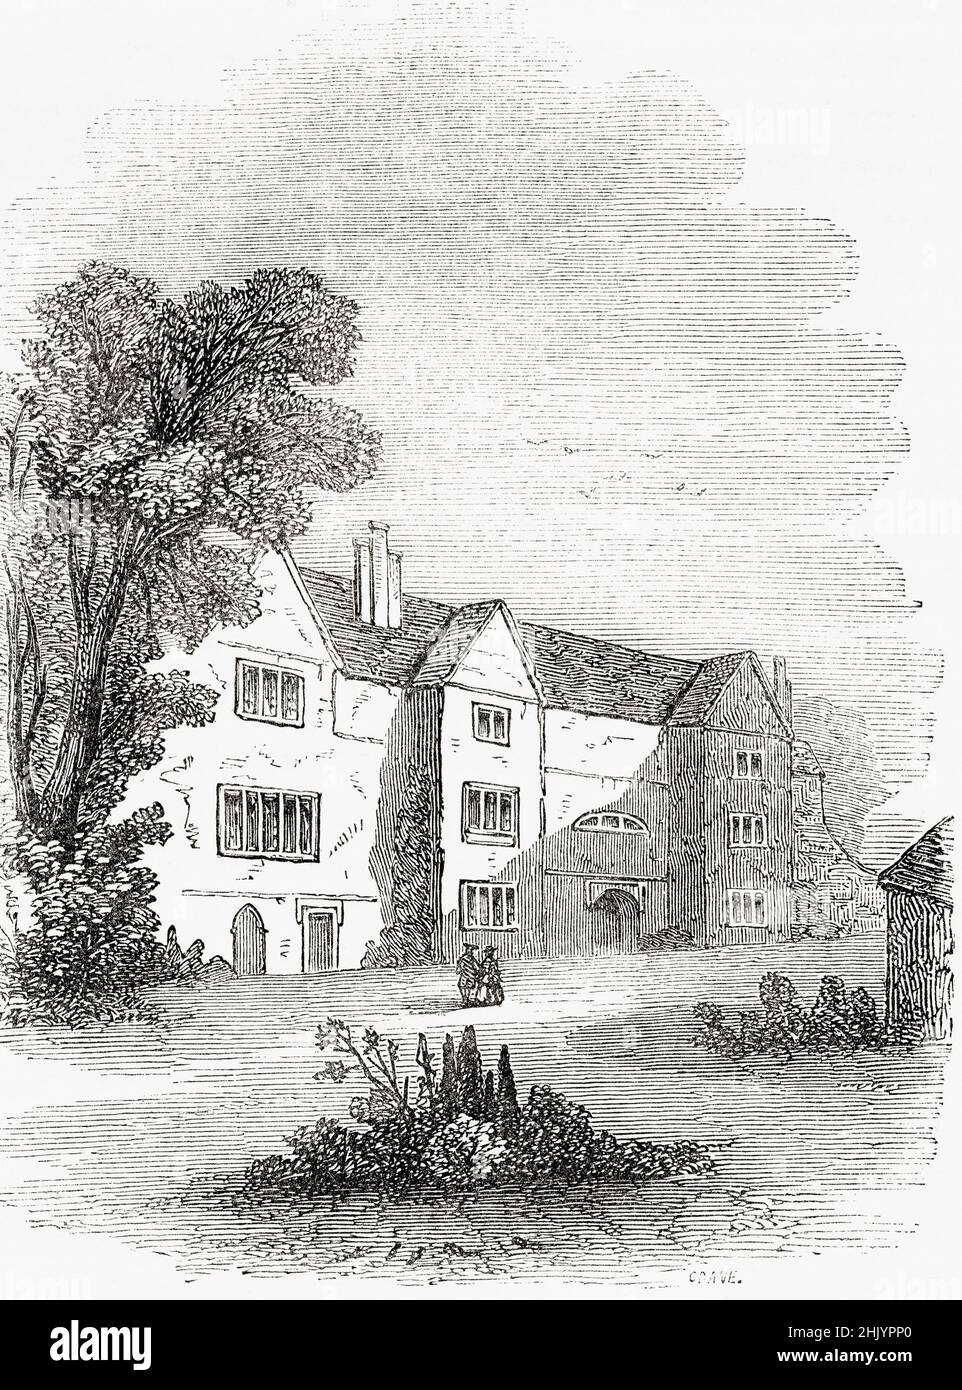 Das Haus von Samuel Richardson in Parson's Green, in der Nähe von Fulham, London. Samuel Richardson, 1689–1761. Englischer Schriftsteller und Drucker. Aus Cassells Illustrated History of England, veröffentlicht um 1890. Stockfoto